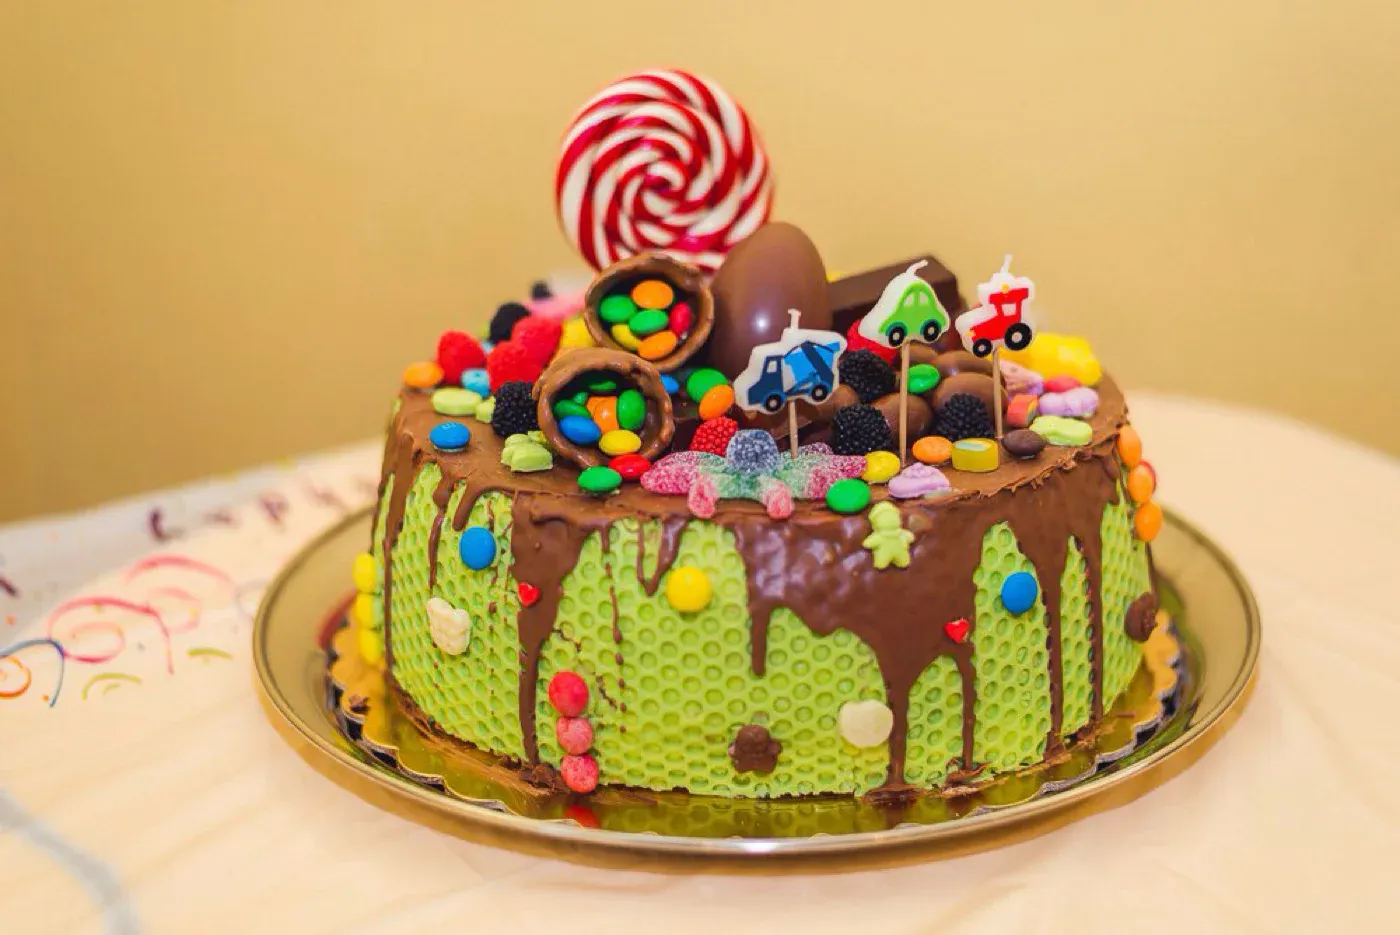 Чем украсить торт в домашних условиях фото детский: Как украсить торт в домашних условиях. МК. Обсуждение на LiveInternet